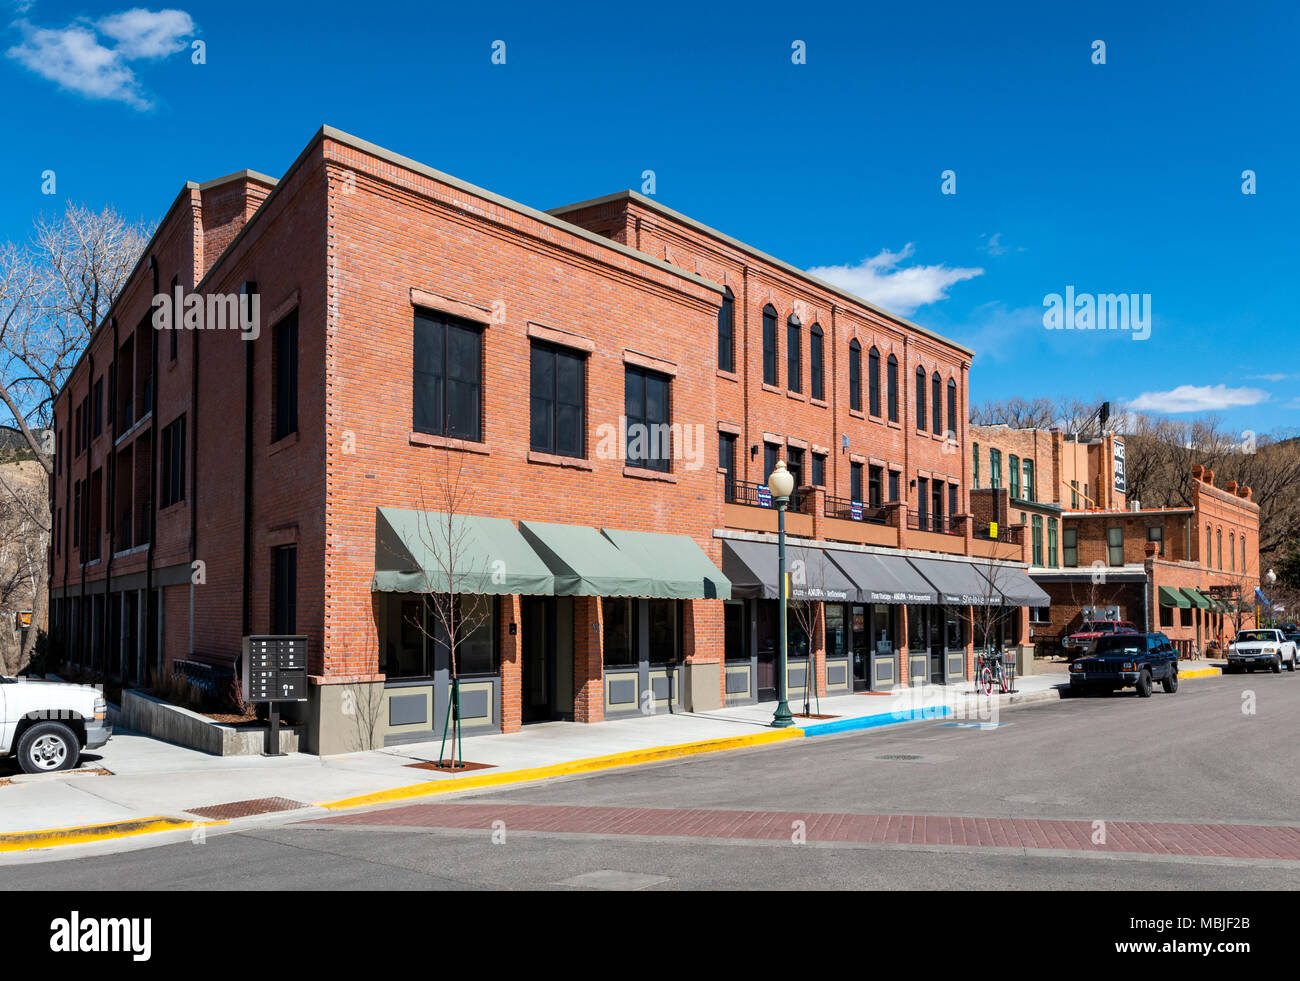 Nuevo edificio de diseño arquitectónico histórico; condominios; tiendas; aparcamiento; Salida, Colorado, EE.UU. Foto de stock